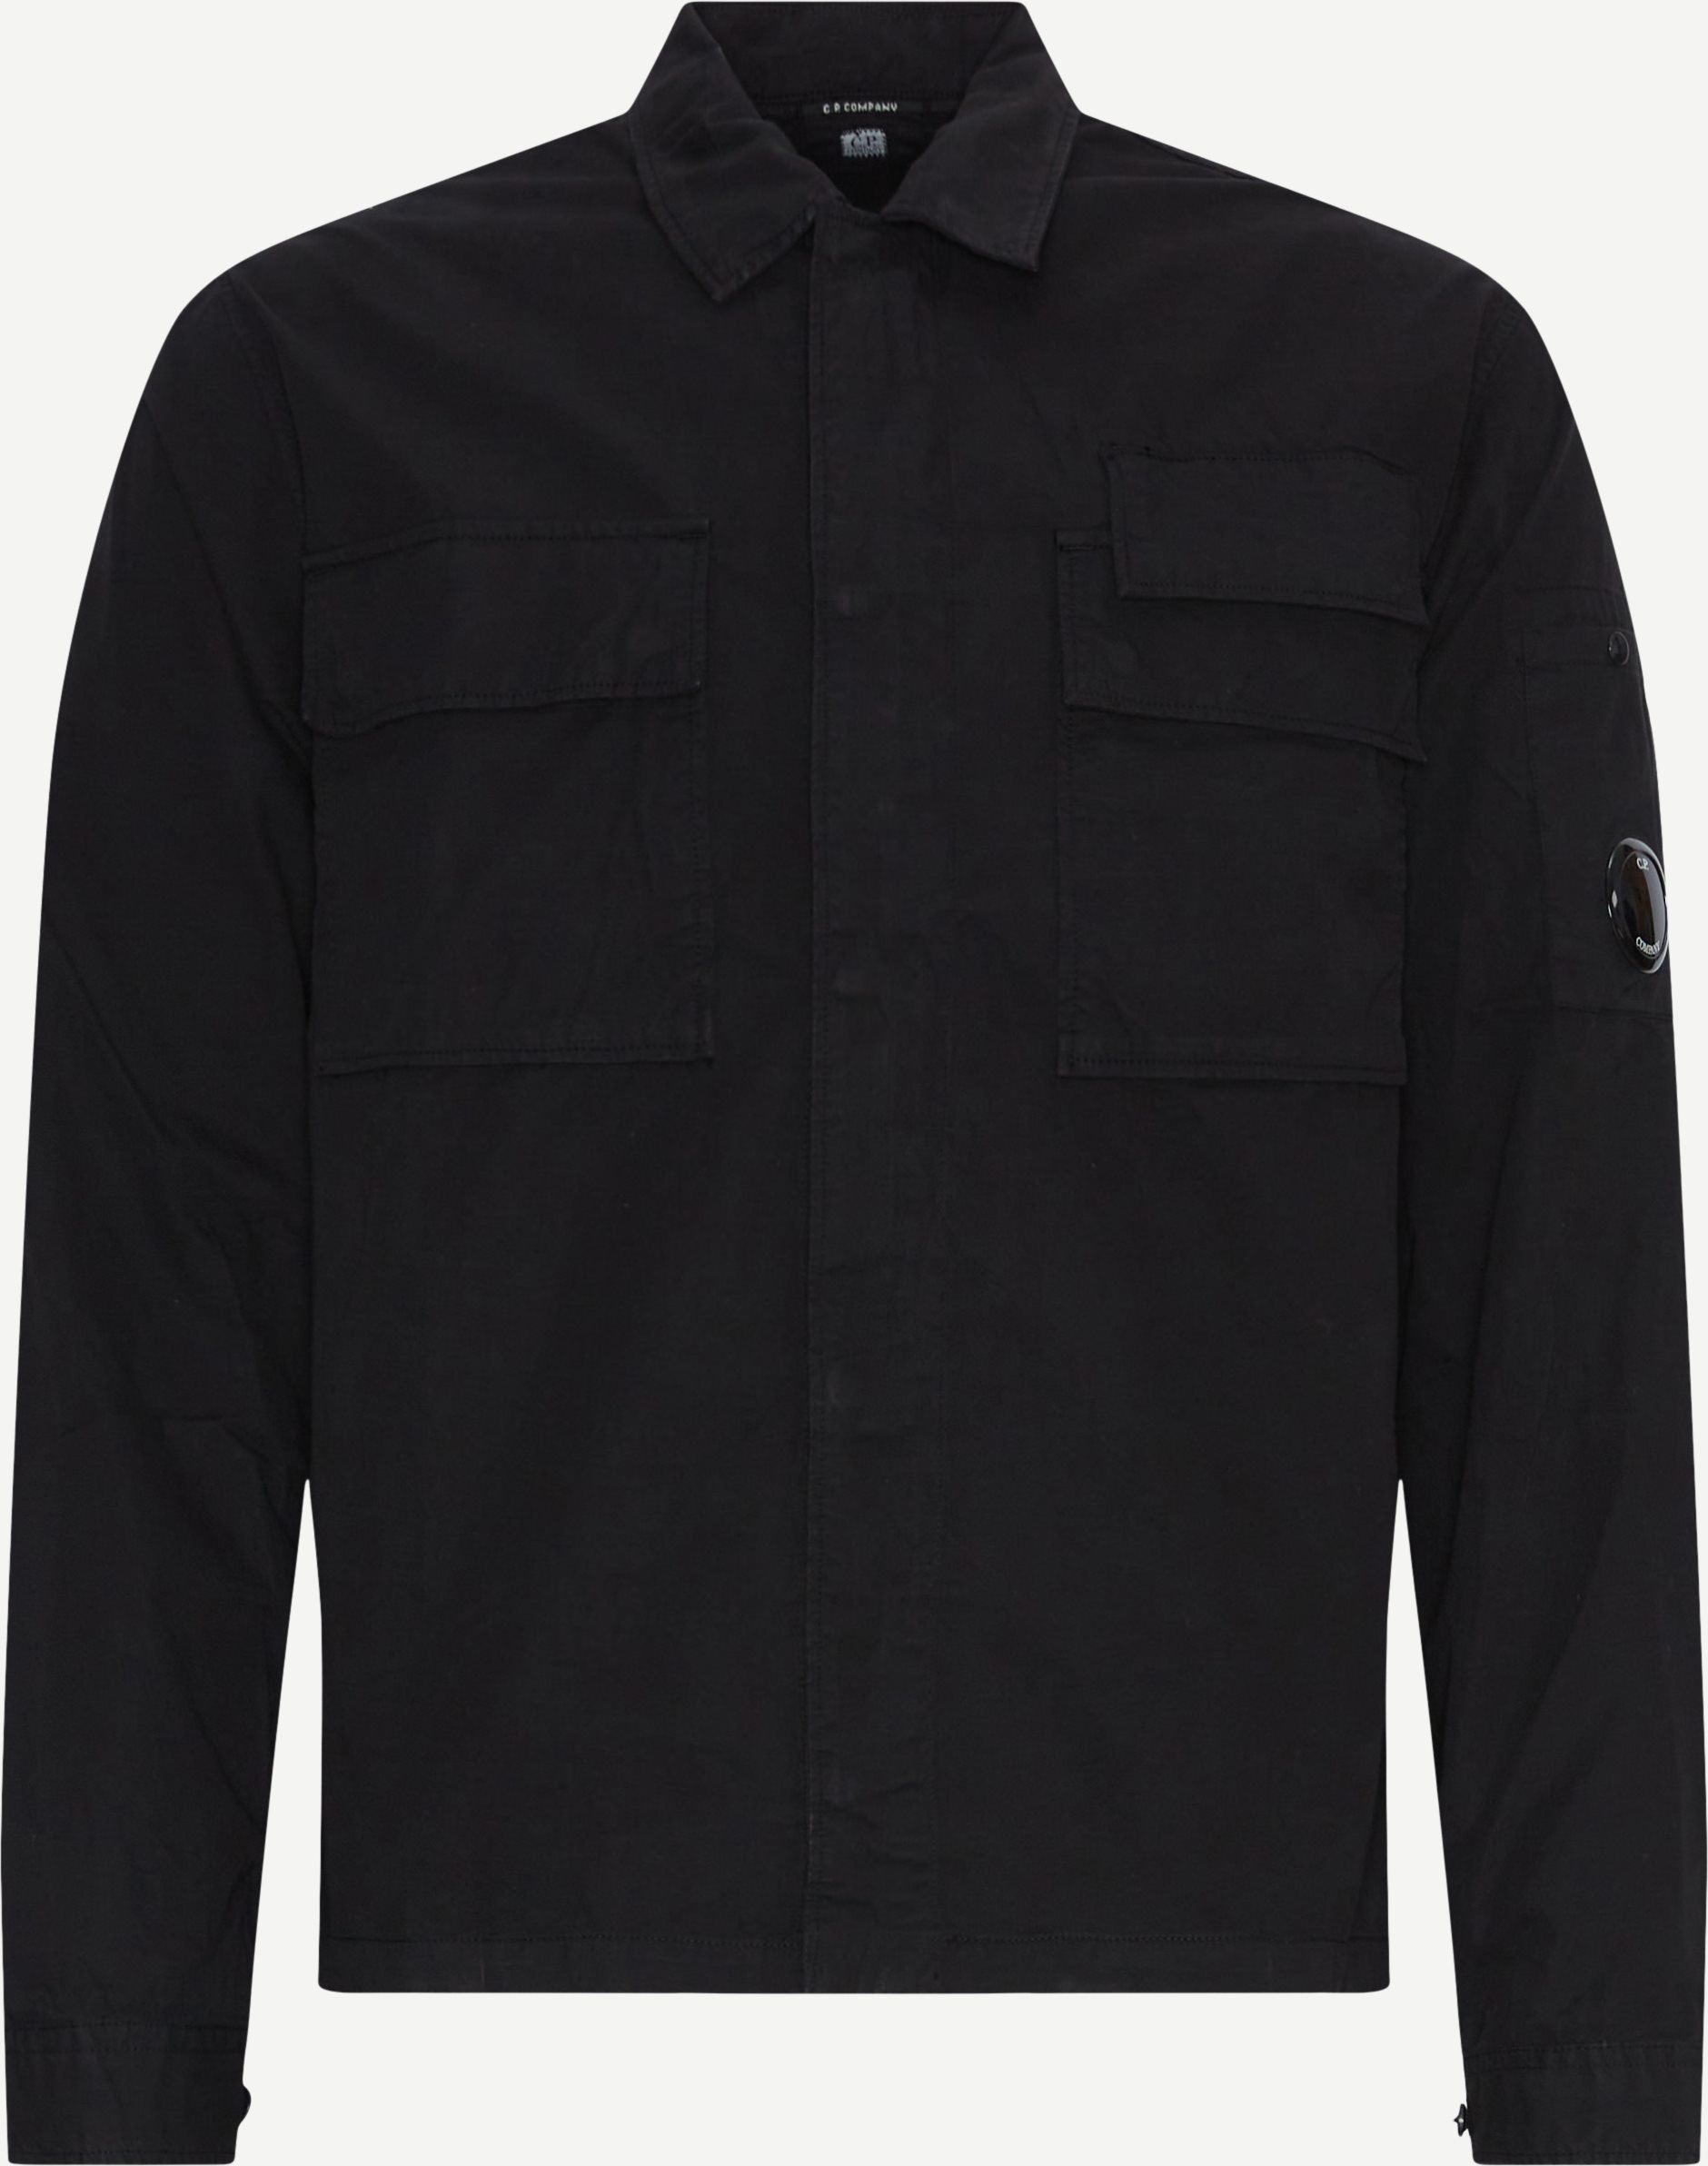 C.P. Company Shirts SH121A 002824G Black